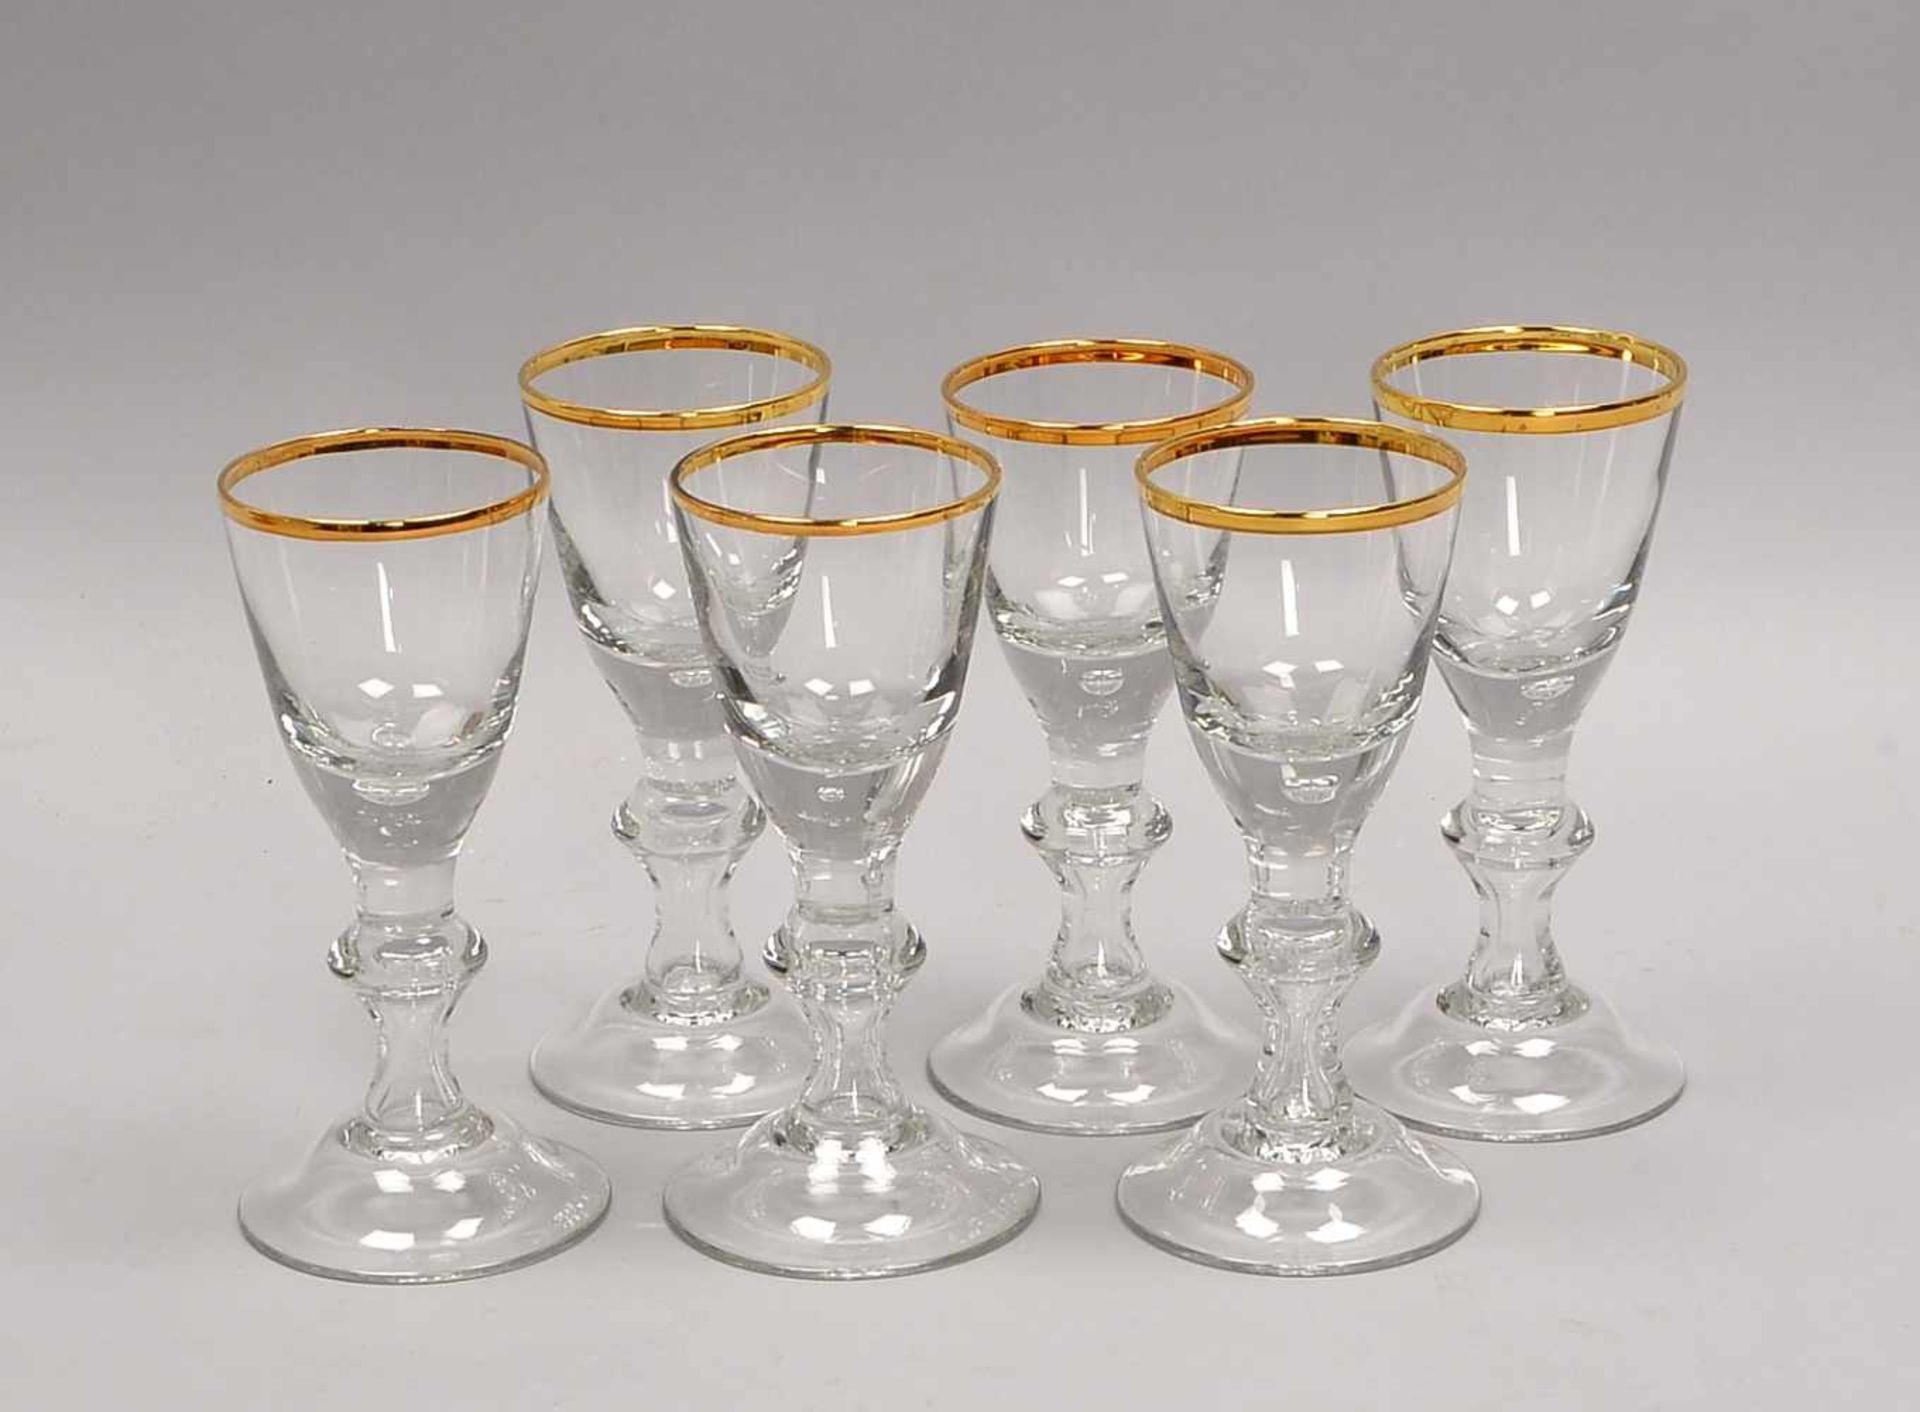 Satz Cherry-Gläser, barocke Form/in Lauensteiner Manier, mit eingestochenen Luftblasen und Goldrand, - Bild 2 aus 2